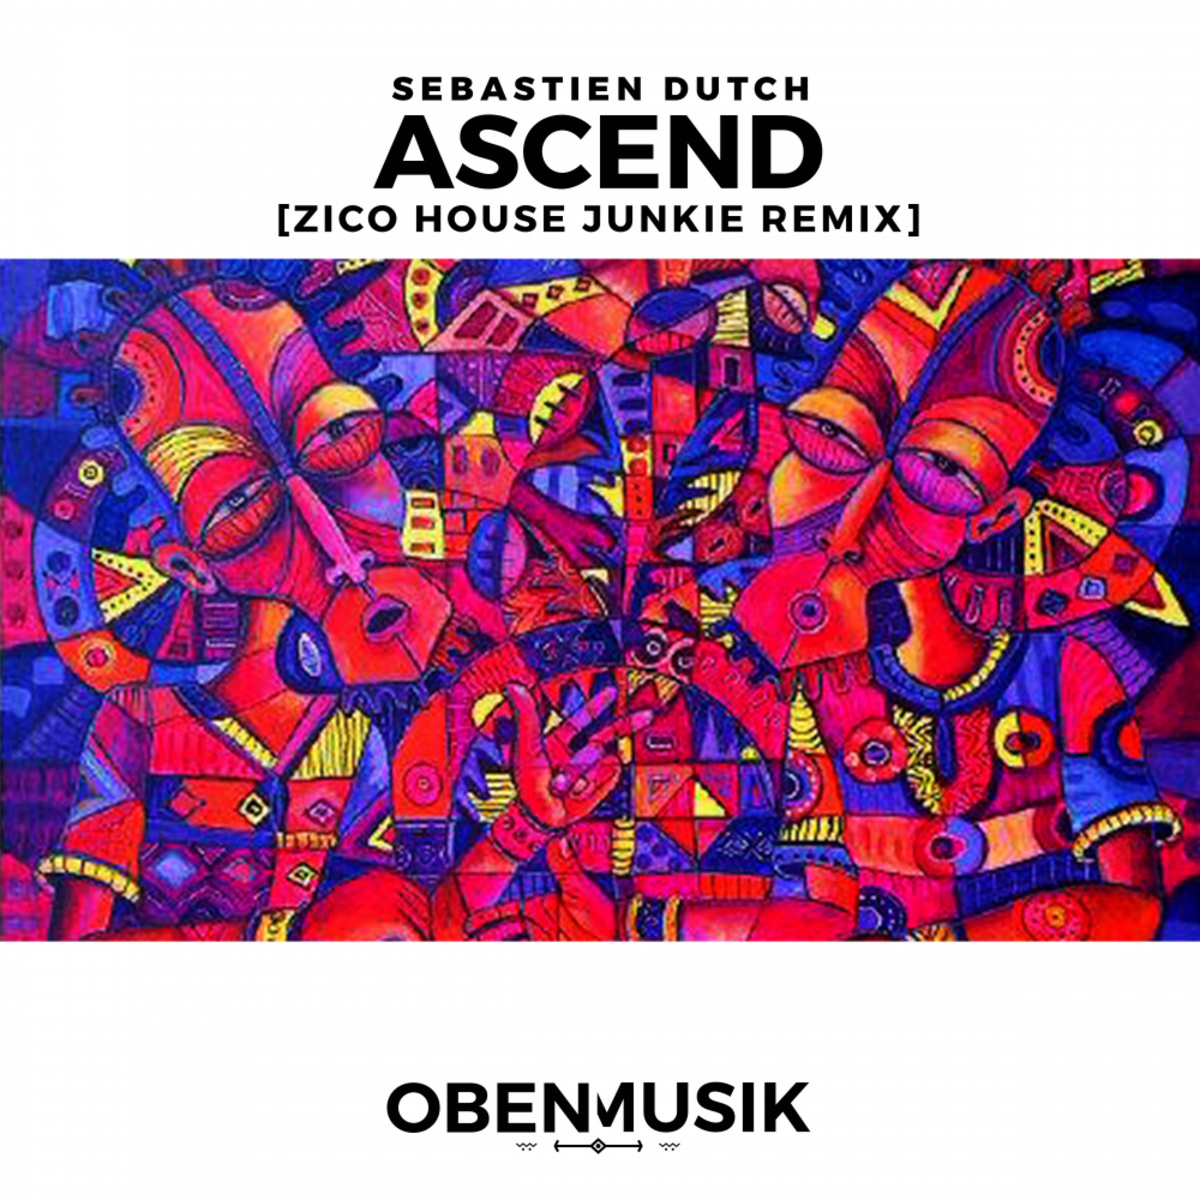 Sebastien Dutch - Ascend (Zico House Junkie Remix) / Obenmusik